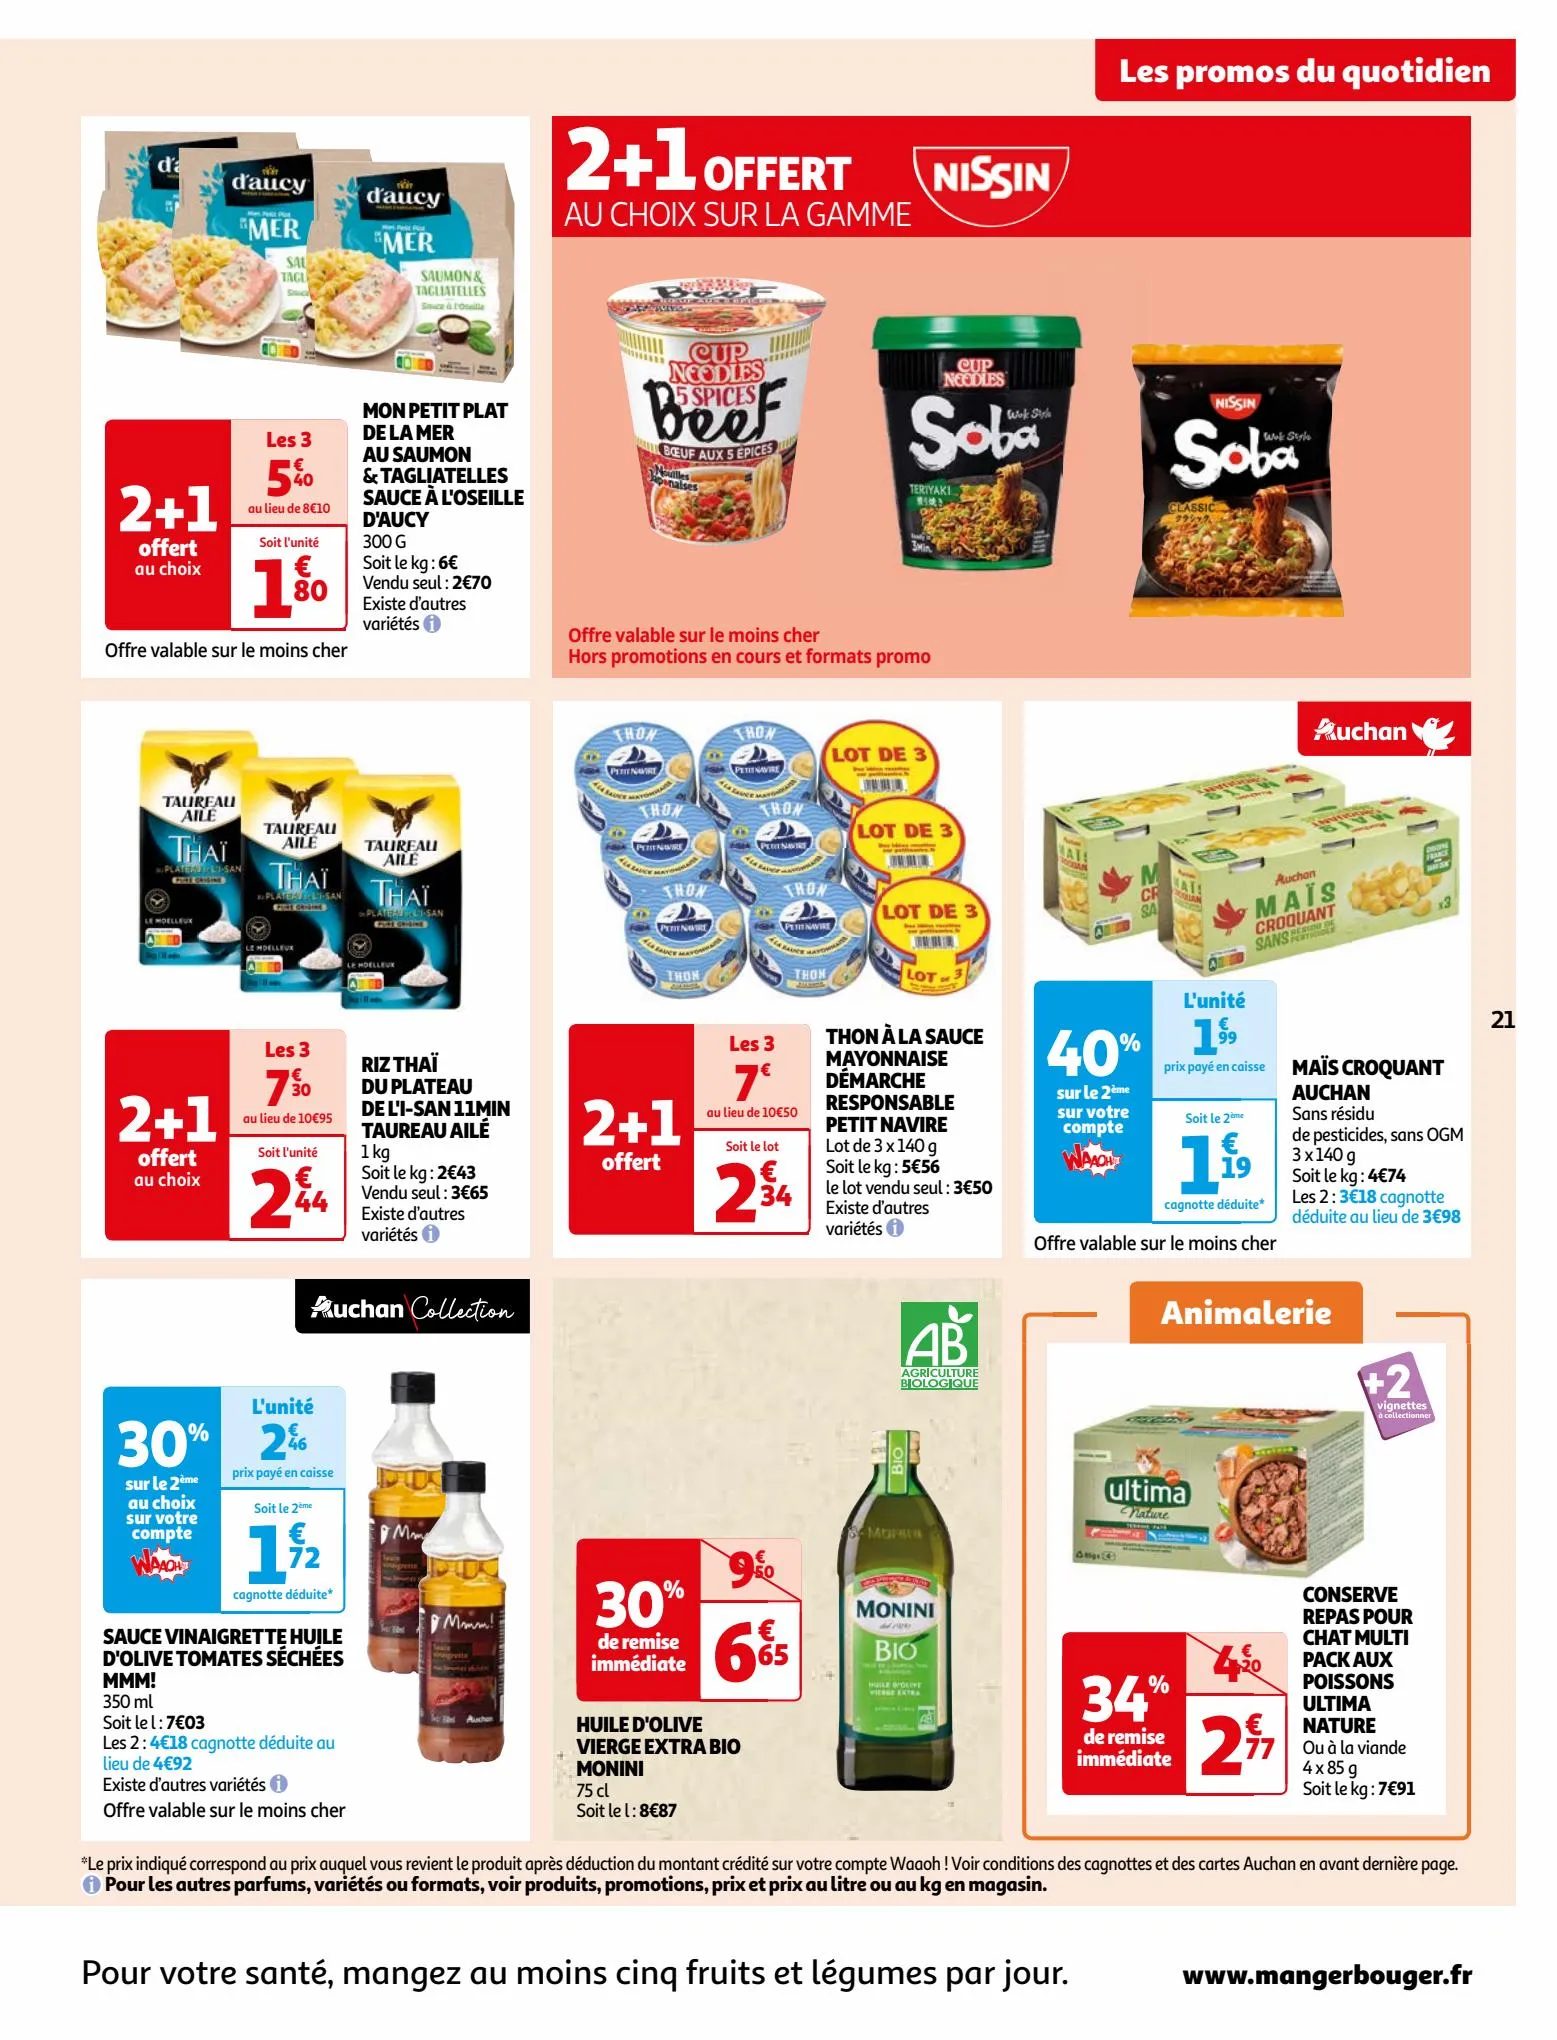 Catalogue Vos produits laitiers à petits prix !, page 00021